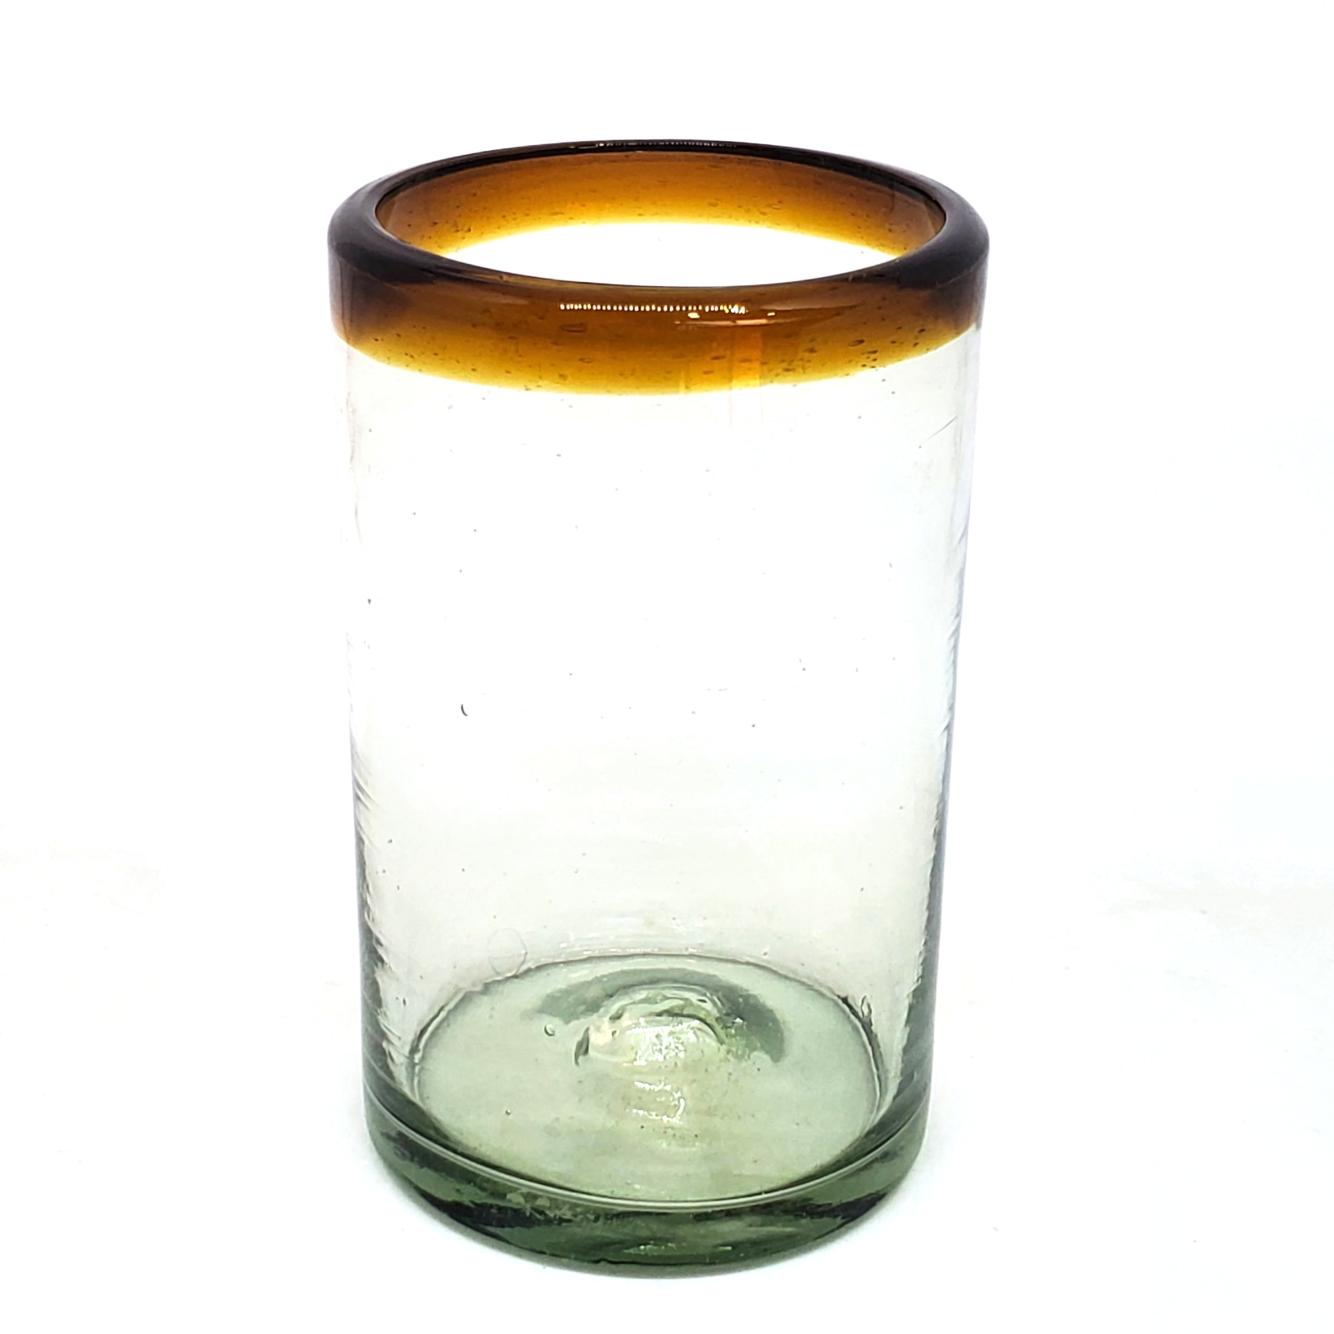 Borde Color Ambar / Juego de 6 vasos grandes con borde color mbar / stos artesanales vasos le darn un toque clsico a su bebida favorita.